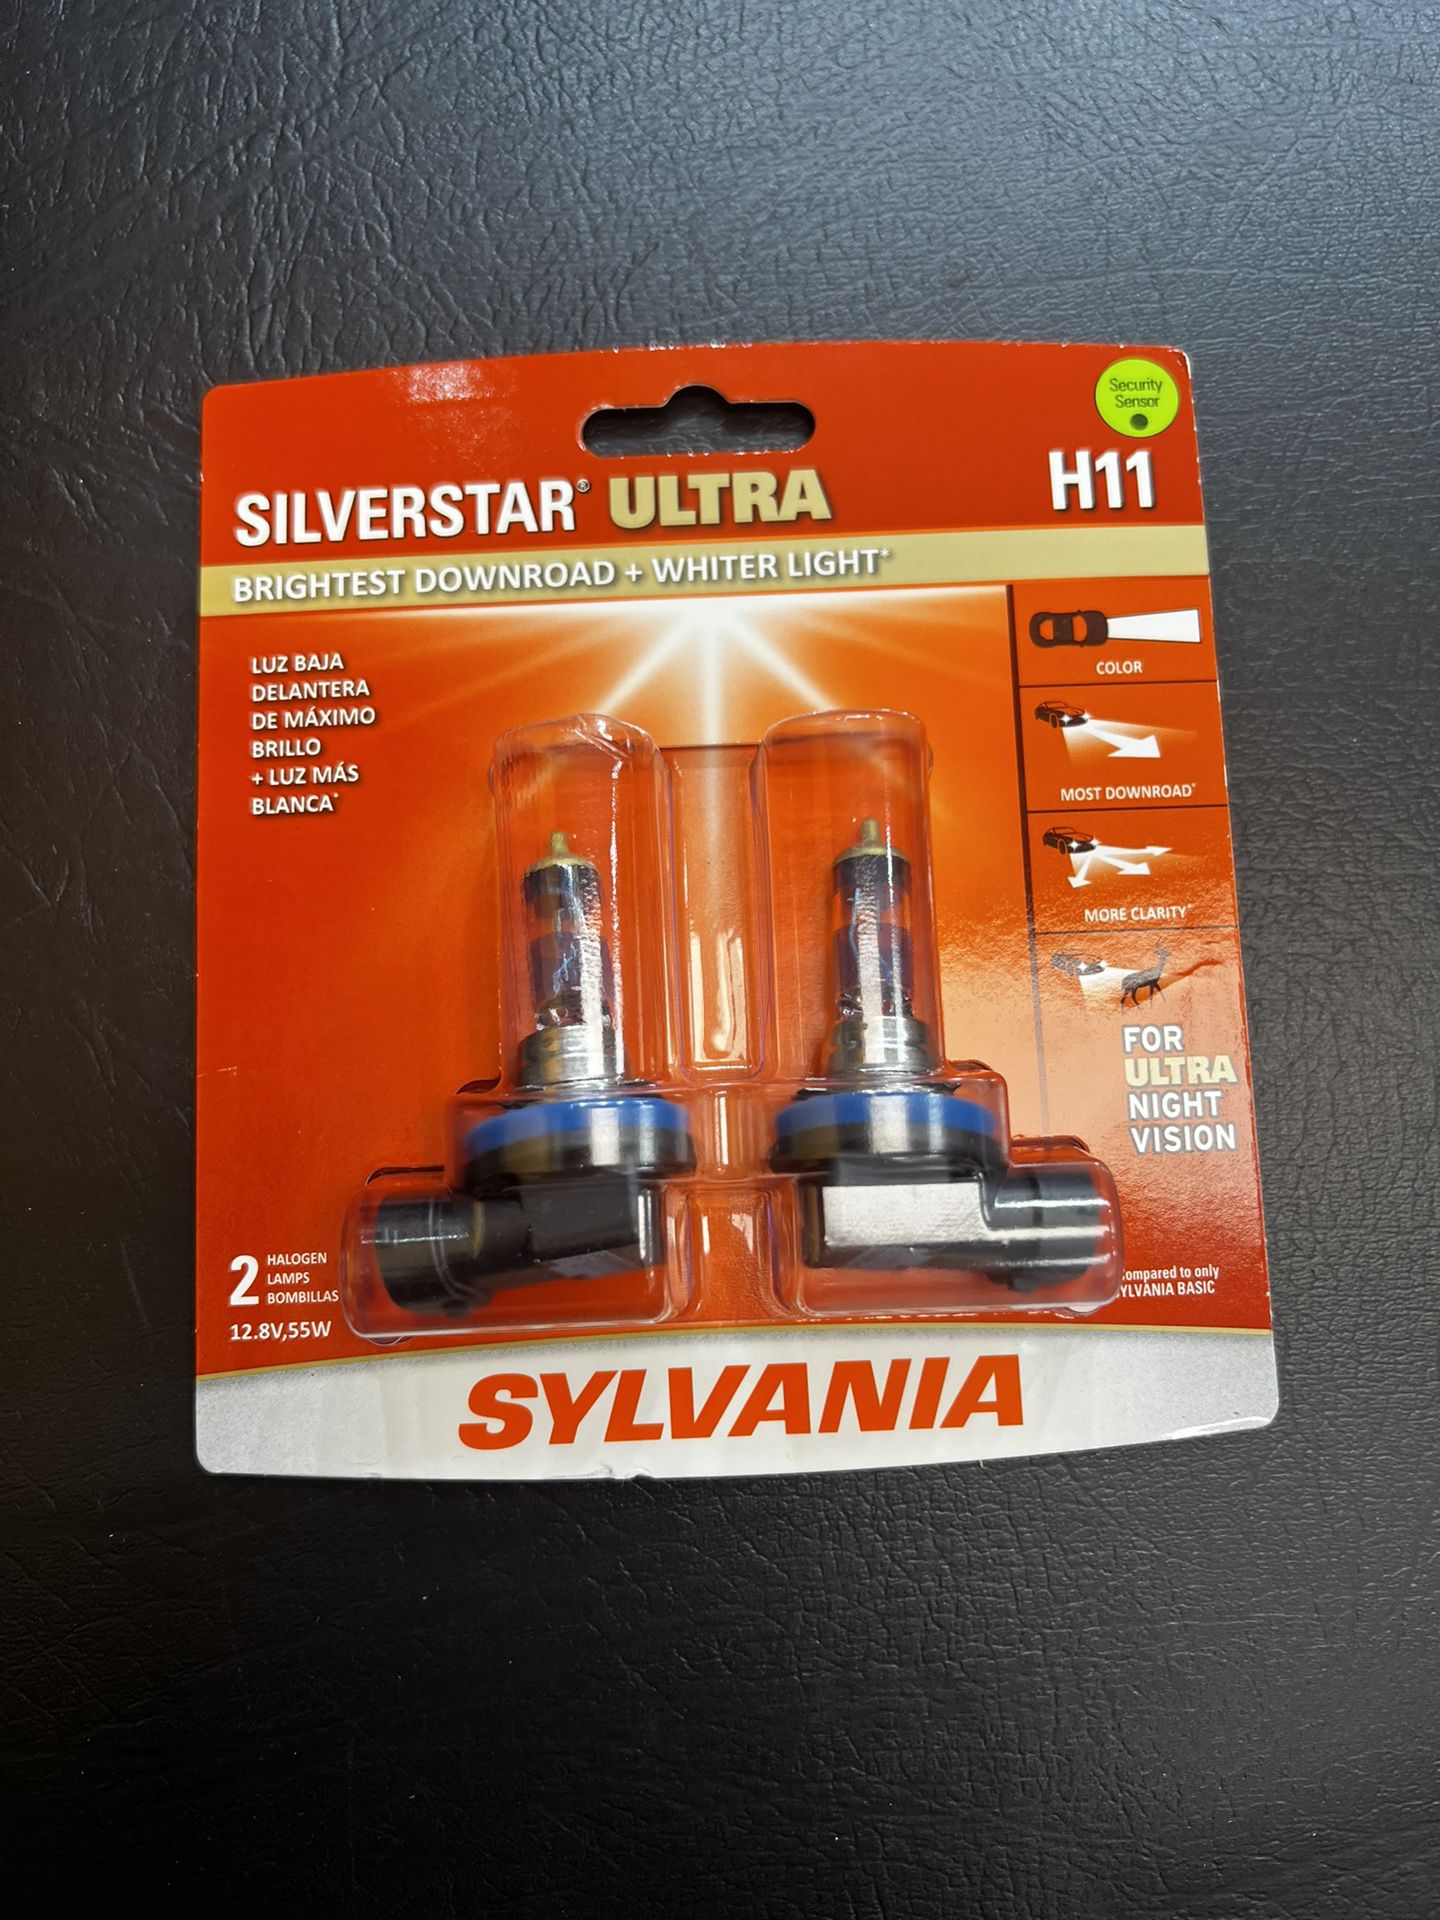 NEW - Sylvania H11 Silverstar ULTRA NIGHT VISION Halogen Headlight Bulbs 2-Pack